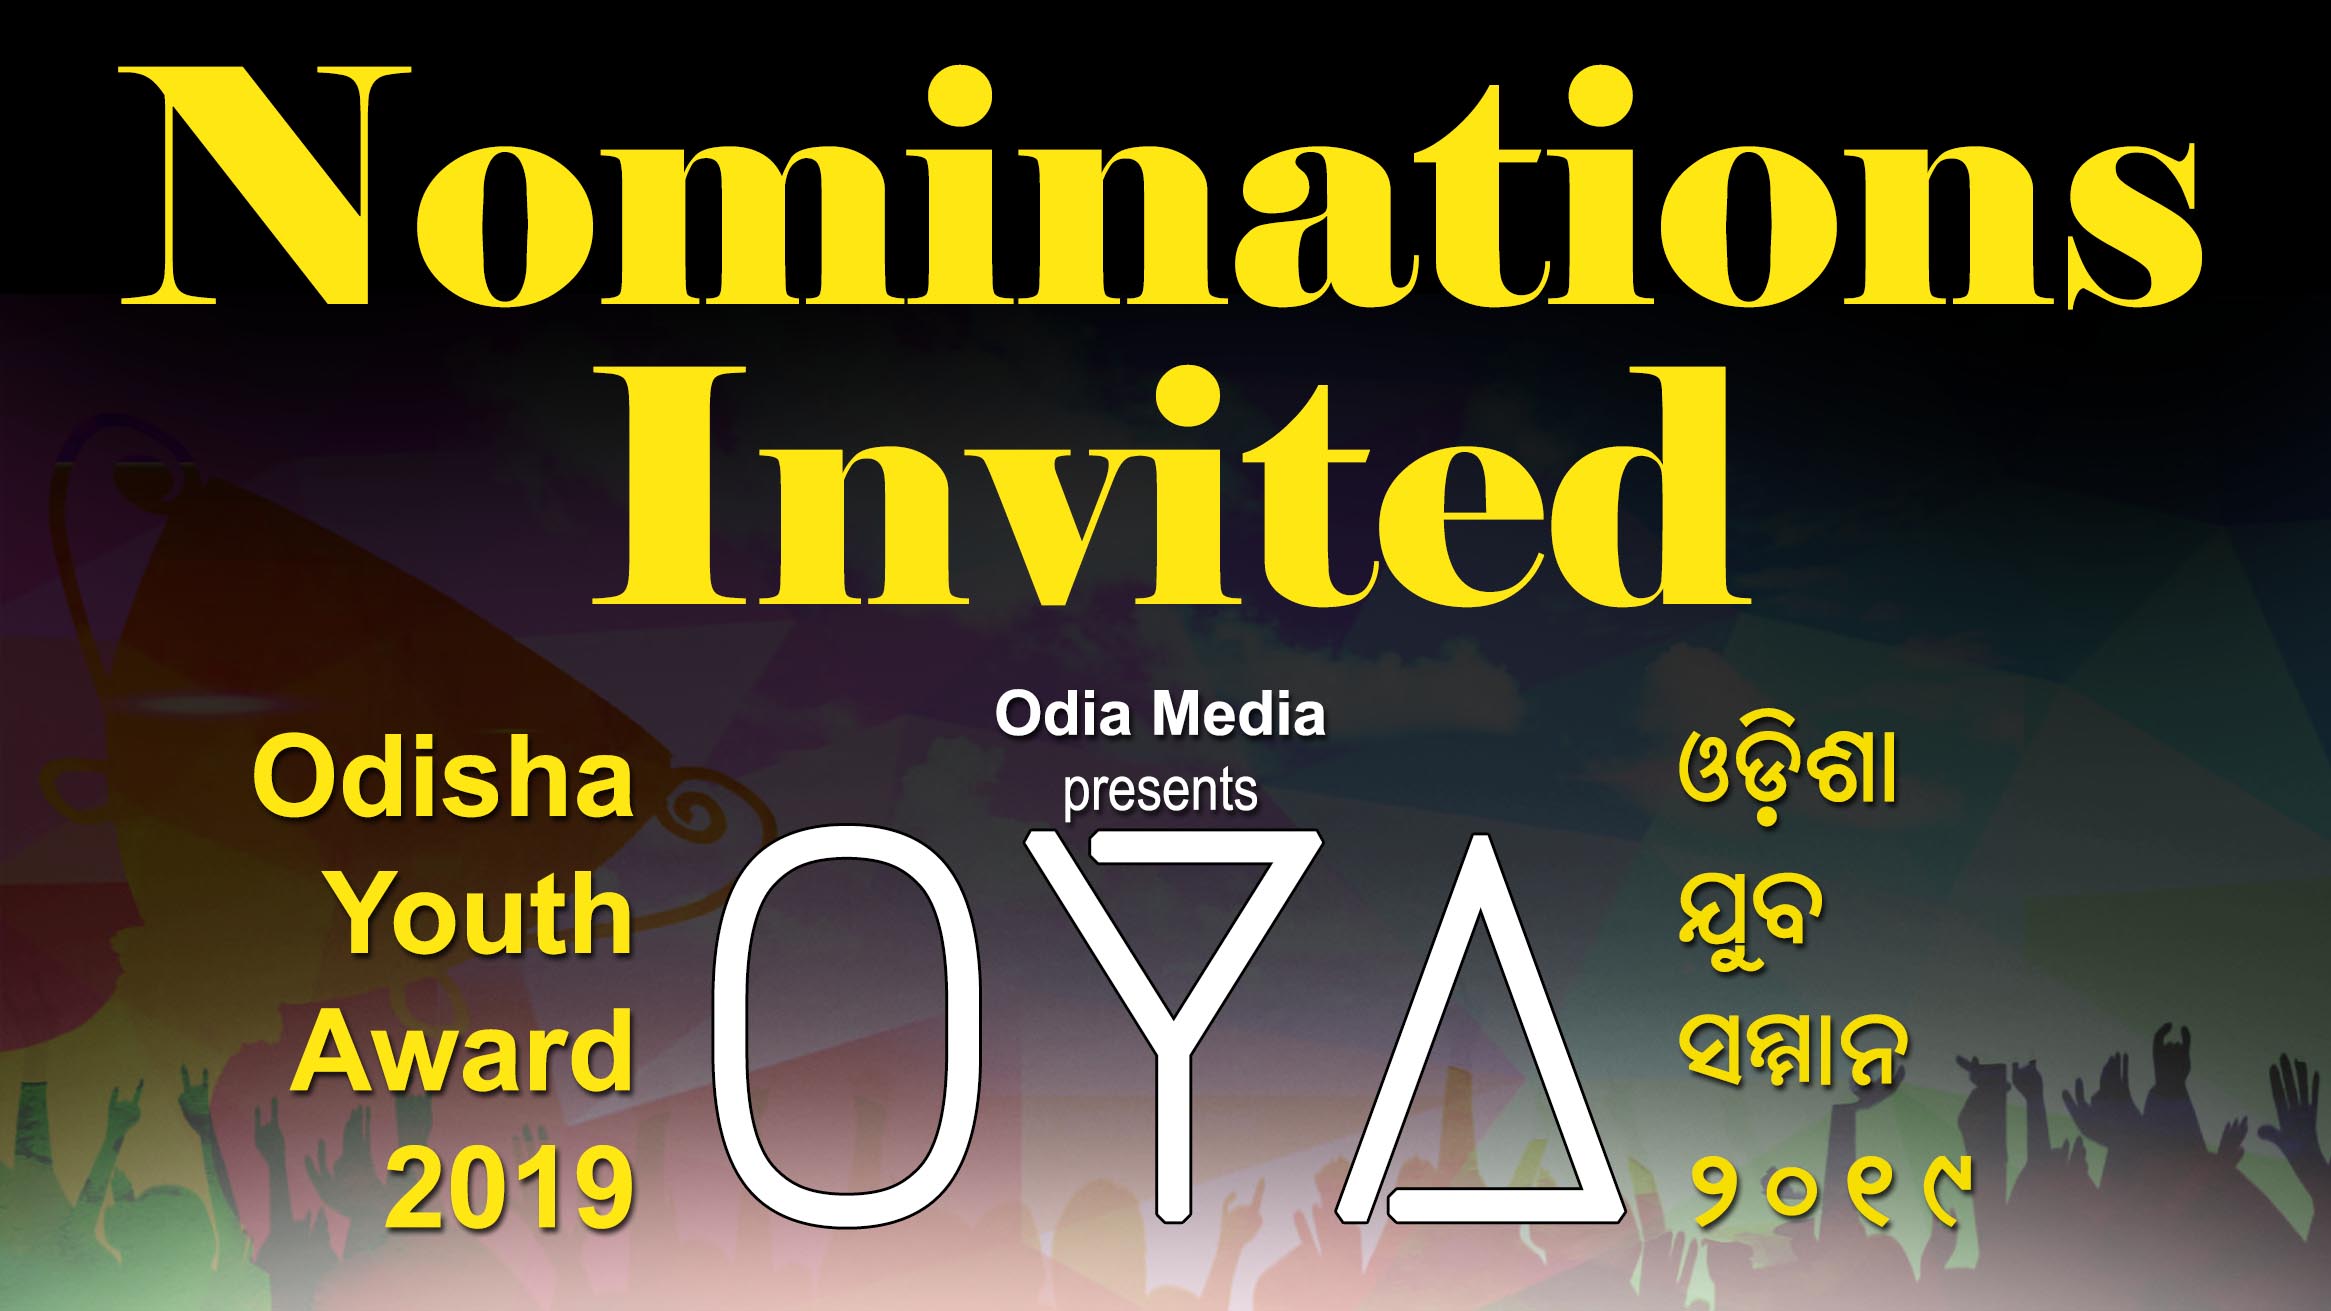 Odisha Youth Award 2019